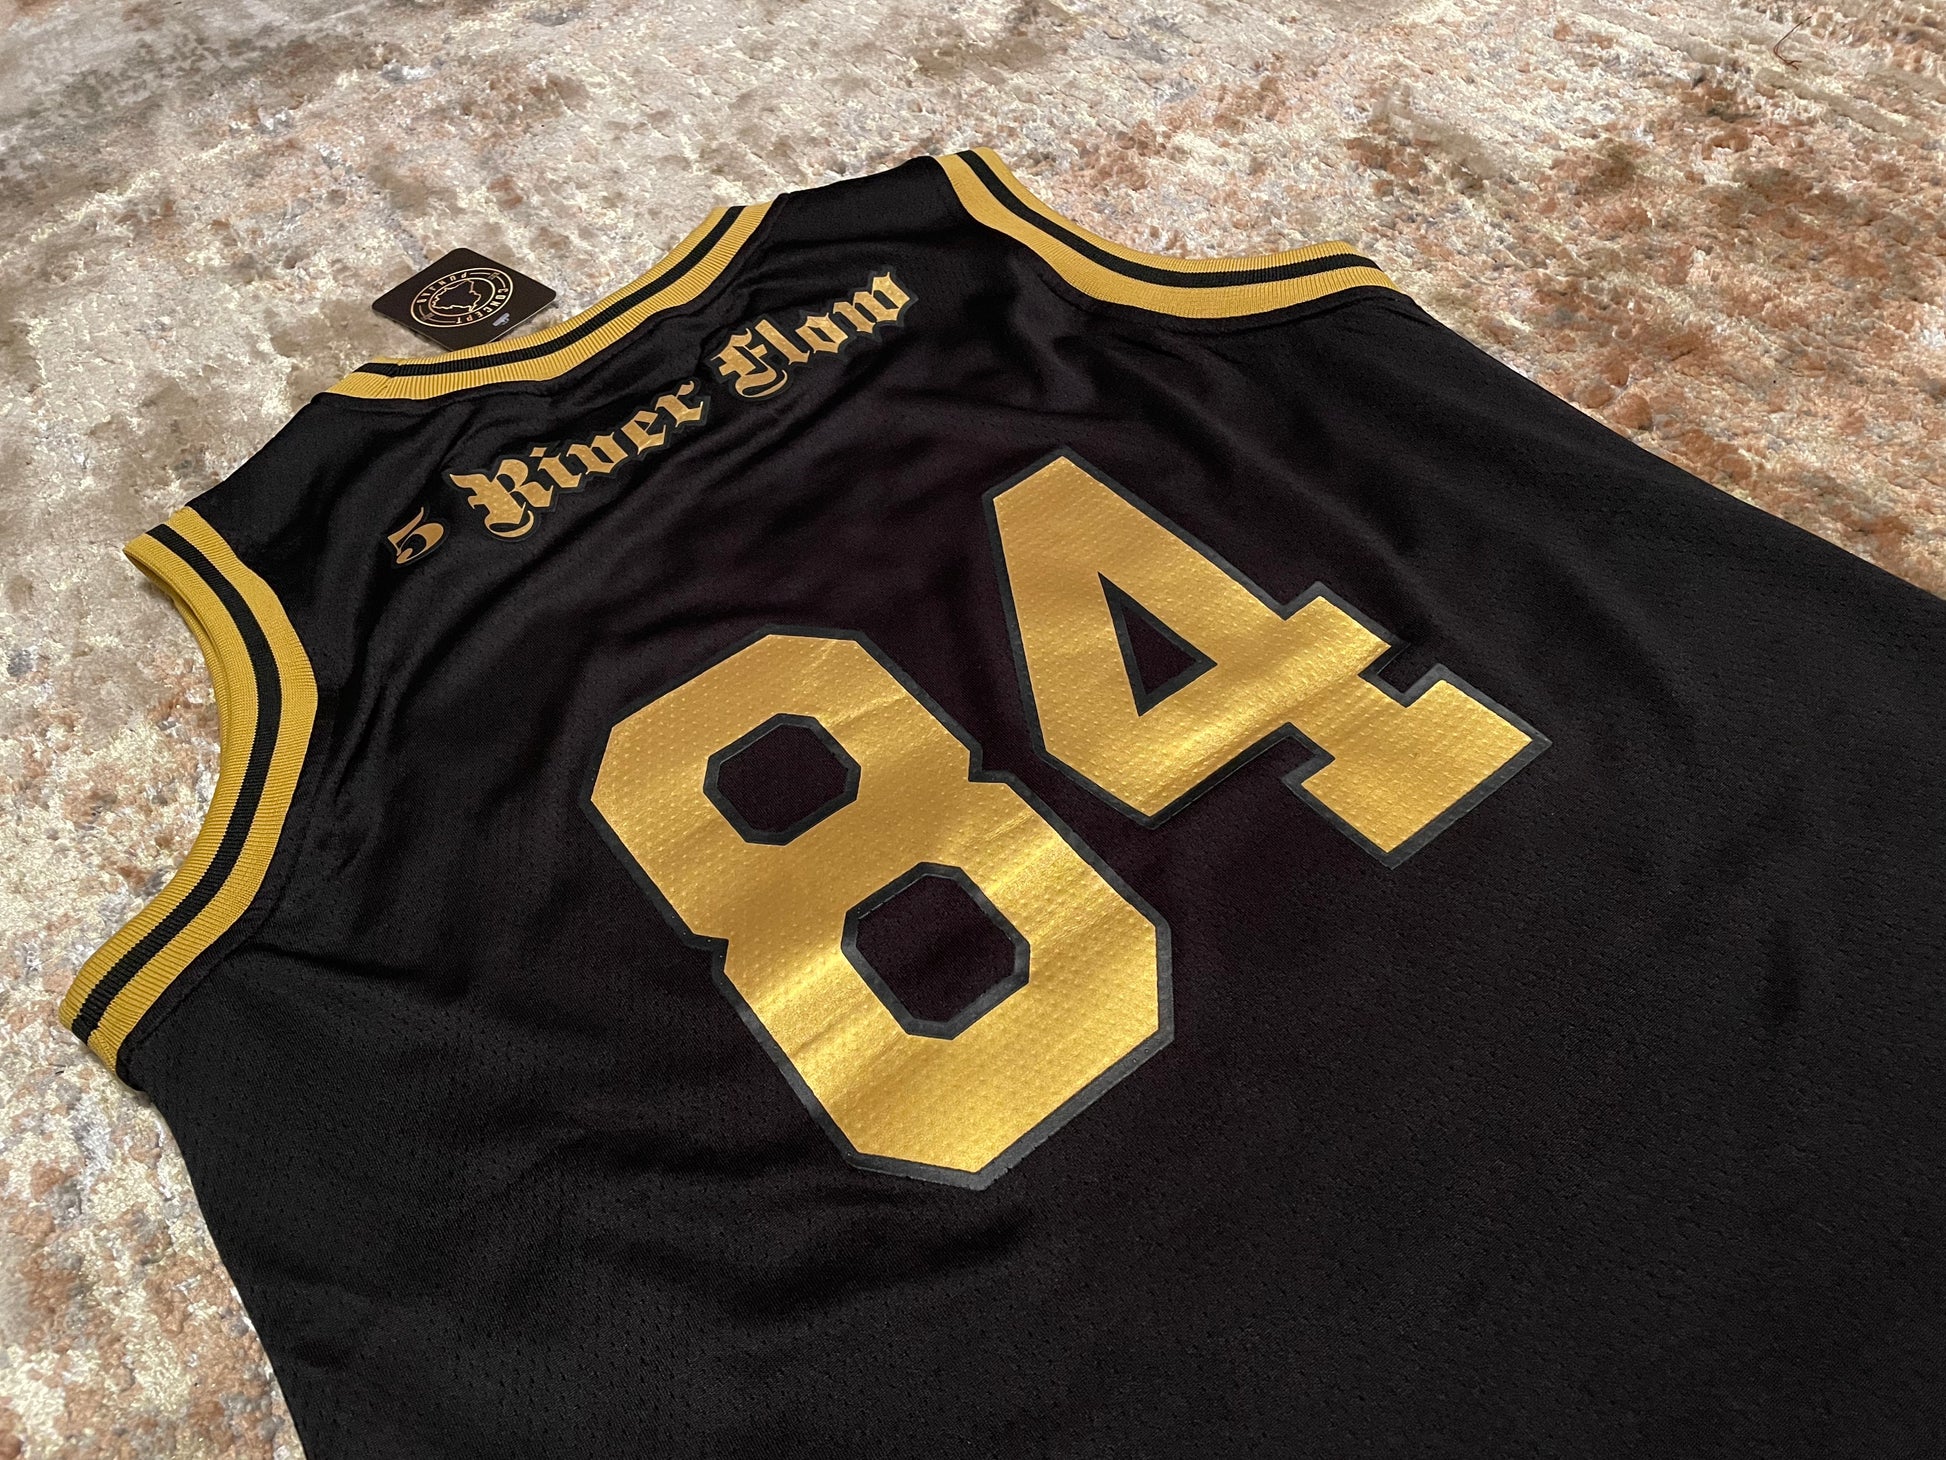 Black & Gold Punjab Basketball Jersey – conceptpunjab